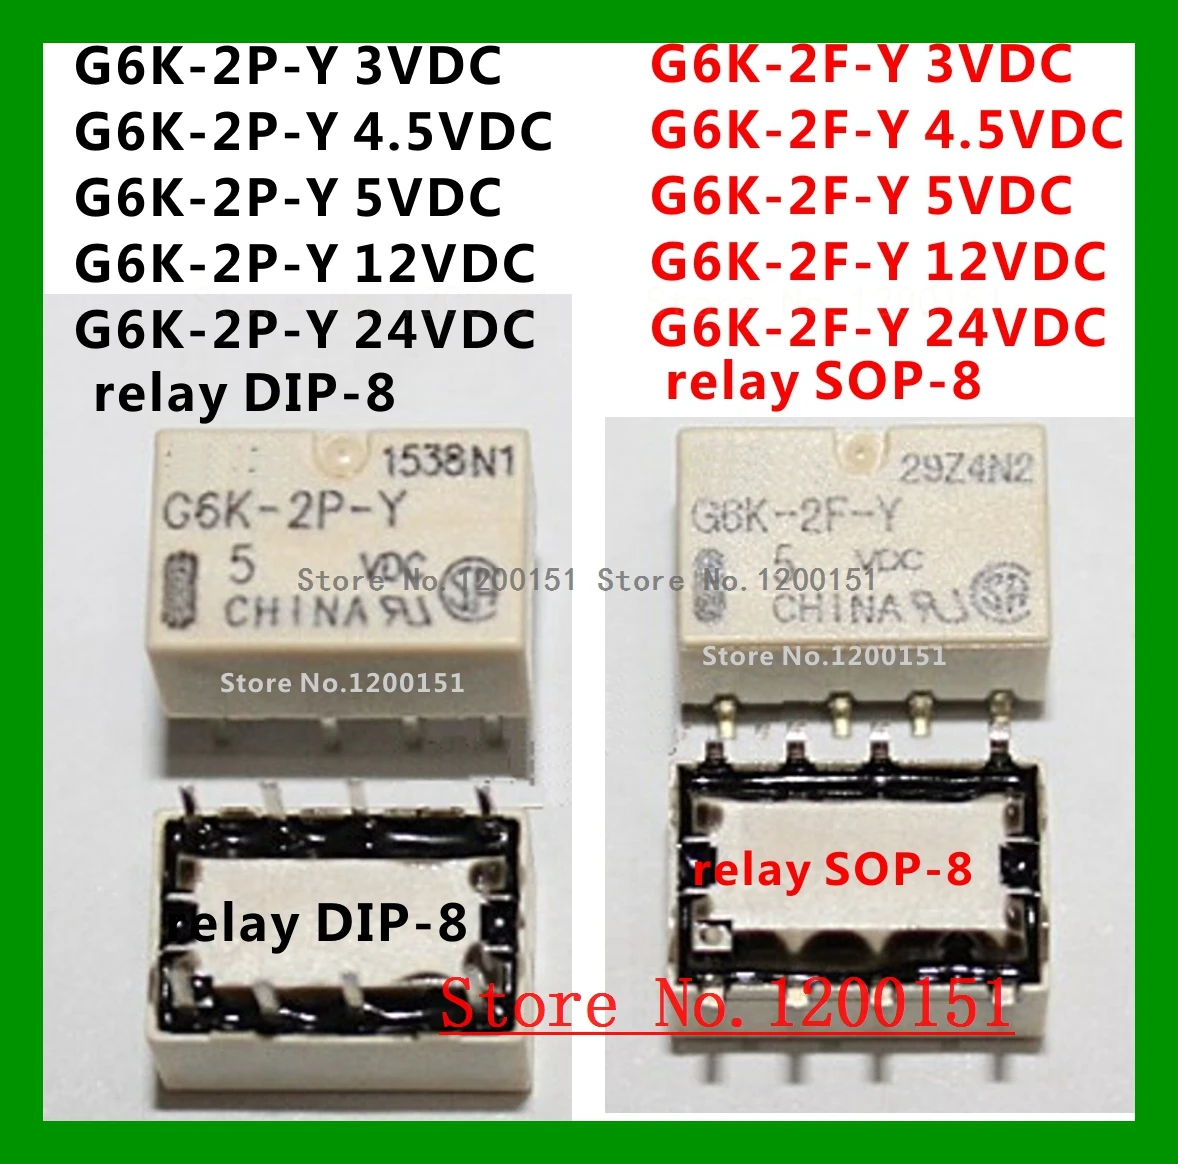 

G6K-2P-Y 3VDC 4.5VDC 5VDC 12VDC 24VDC relay DIP-8 G6K-2F-Y 3VDC 4.5VDC 5VDC 12VDC 24VDC relay SOP-8